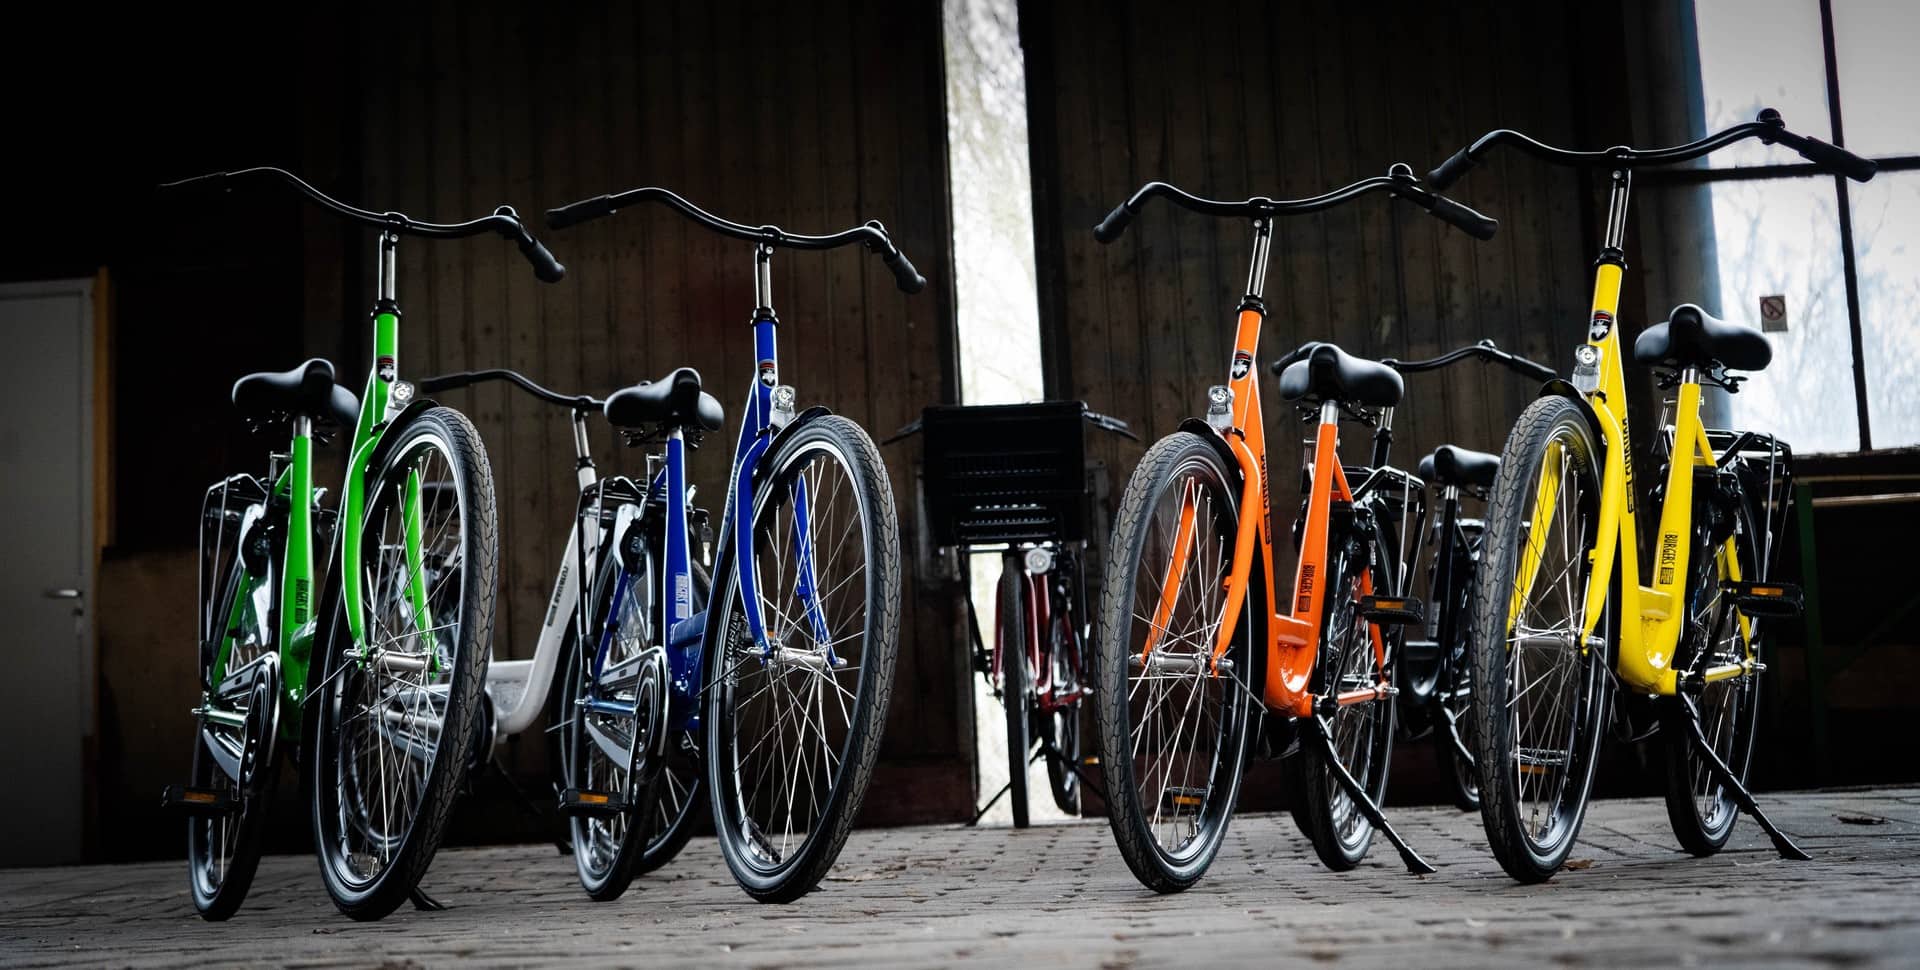 Bedrijfsfiets van Burgers, de fiets voor uw bedrijf. Kies uw eigen kleur!